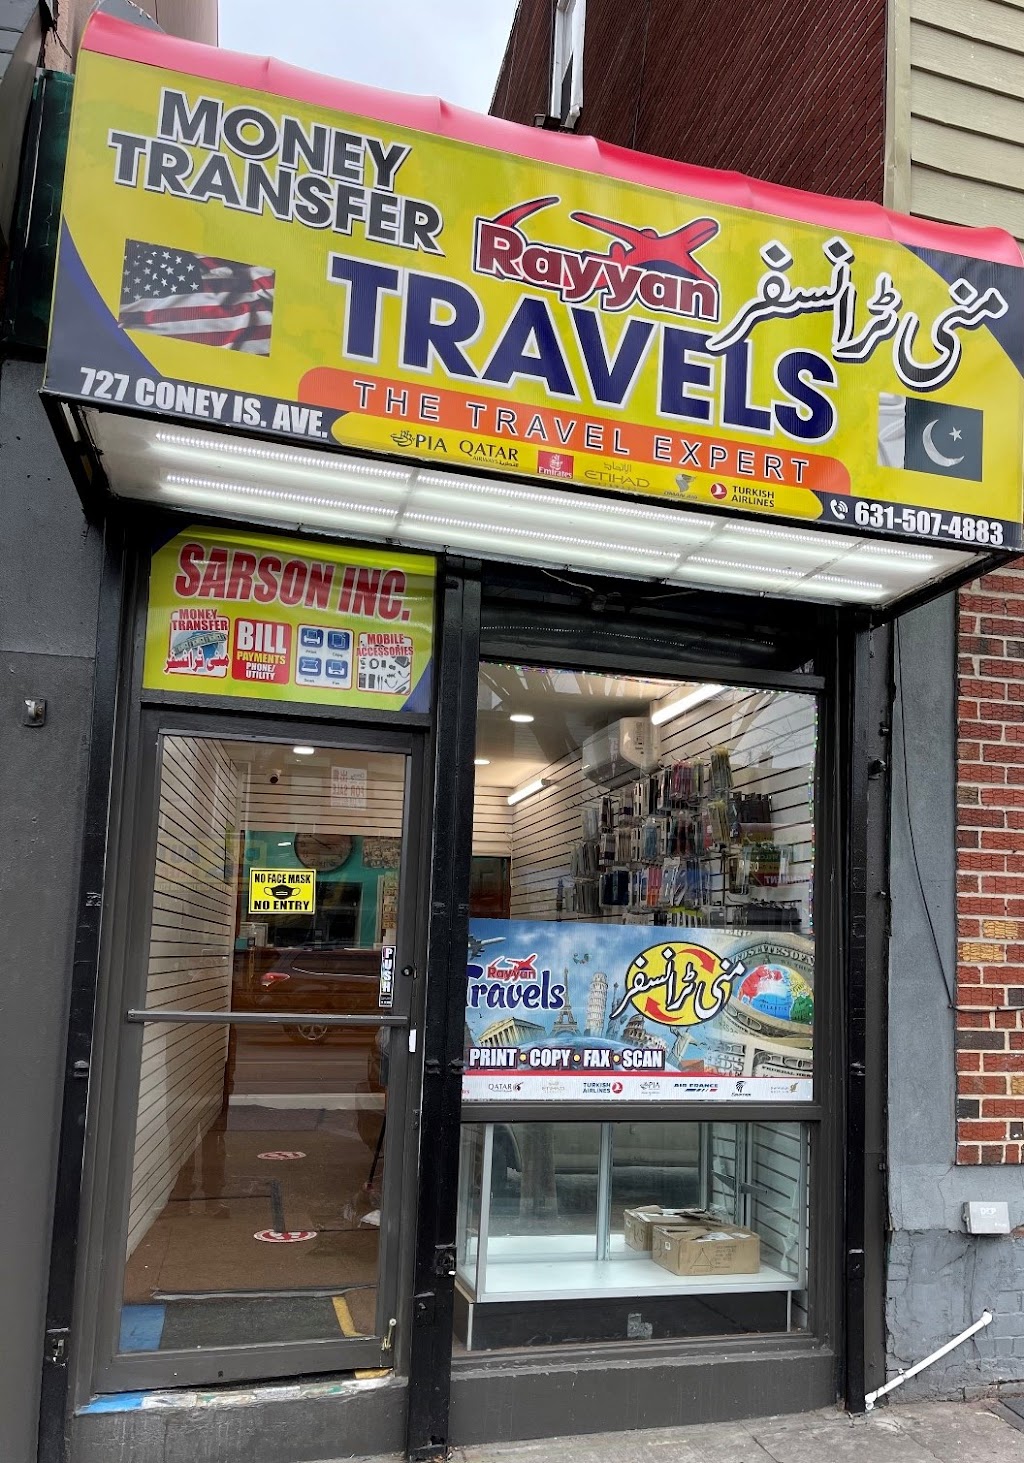 RAYYAN TRAVELS AND MONEY TRANSFER | 727 Coney Island Ave, Brooklyn, NY 11218 | Phone: (631) 507-4883